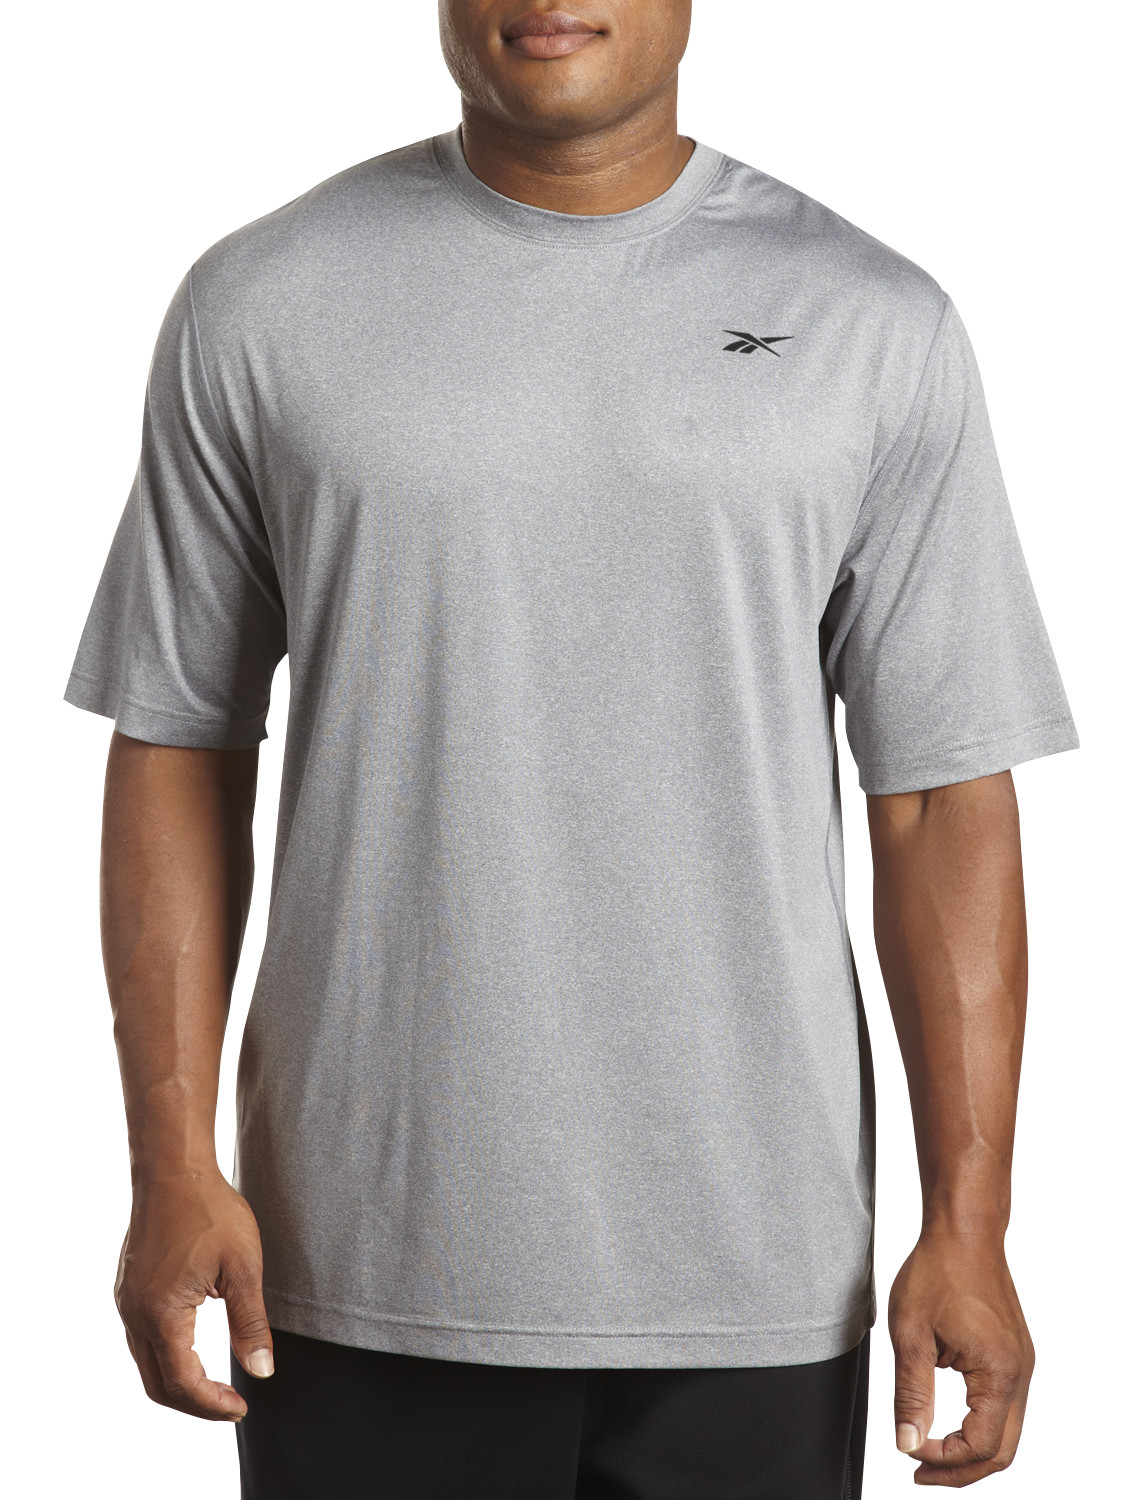 Reebok Men's T-Shirt - Navy - XL